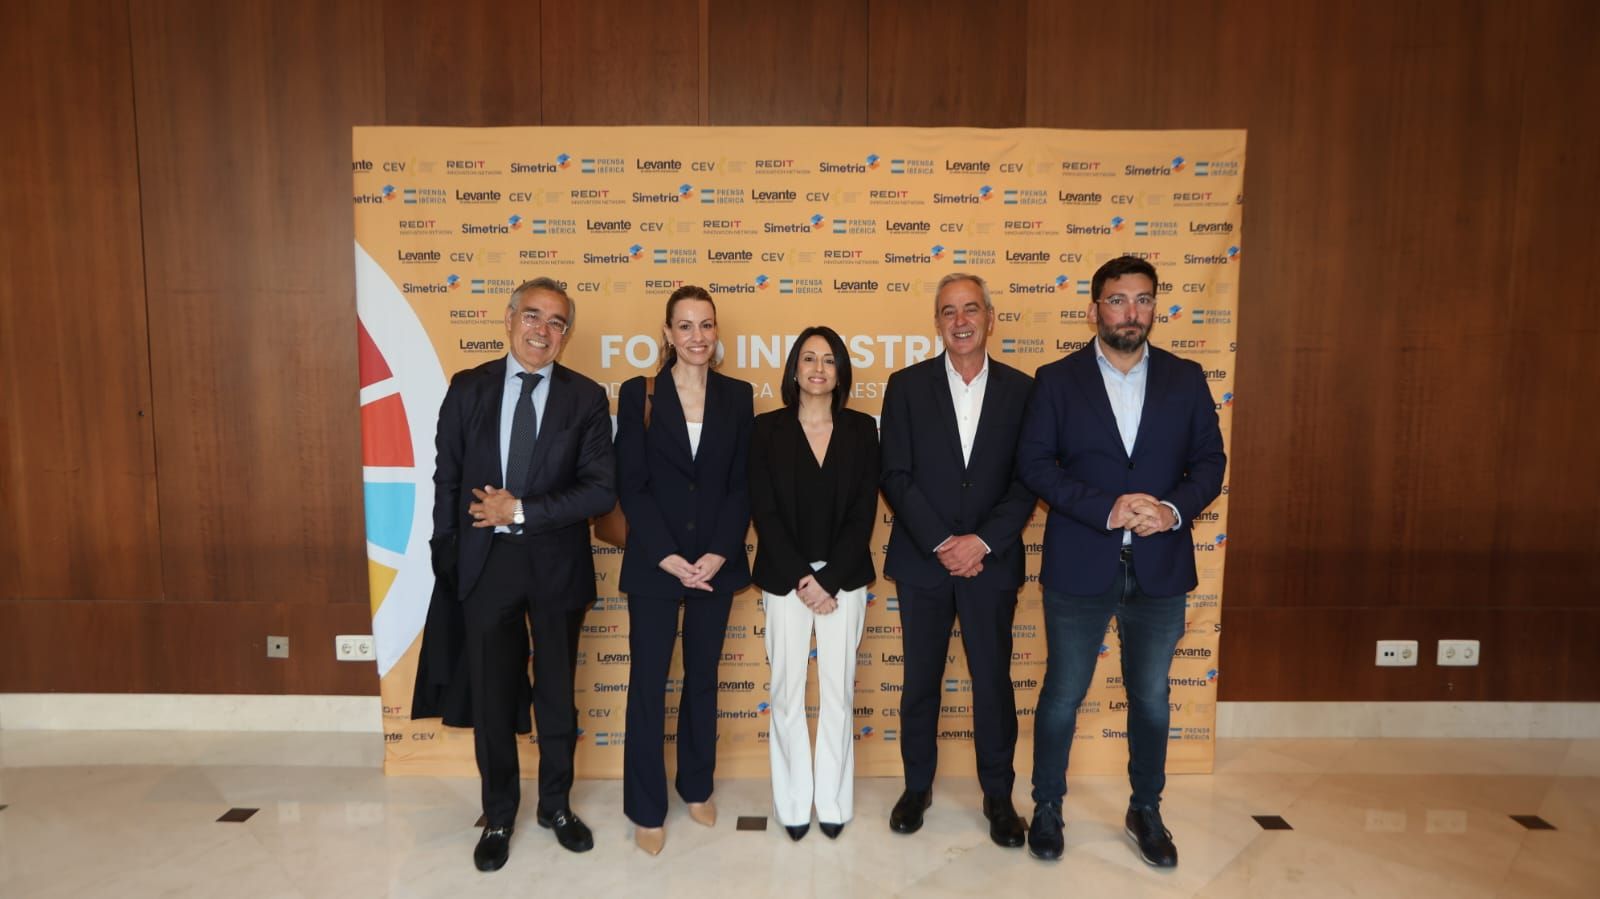 Los retos de la industria y la logística en la Comunitat Valenciana a debate